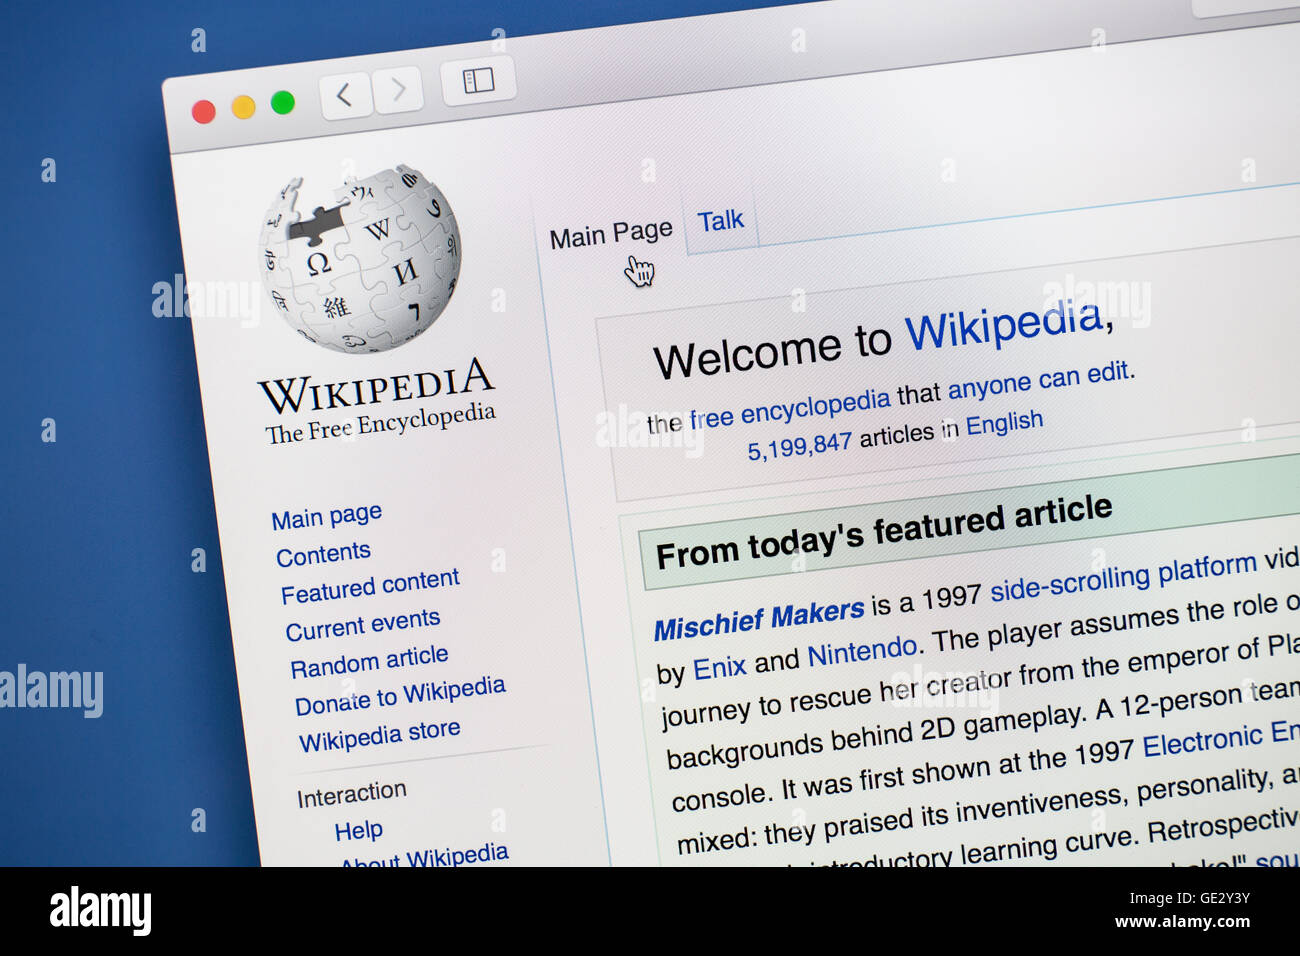 Écran d'ordinateur — Wikipédia